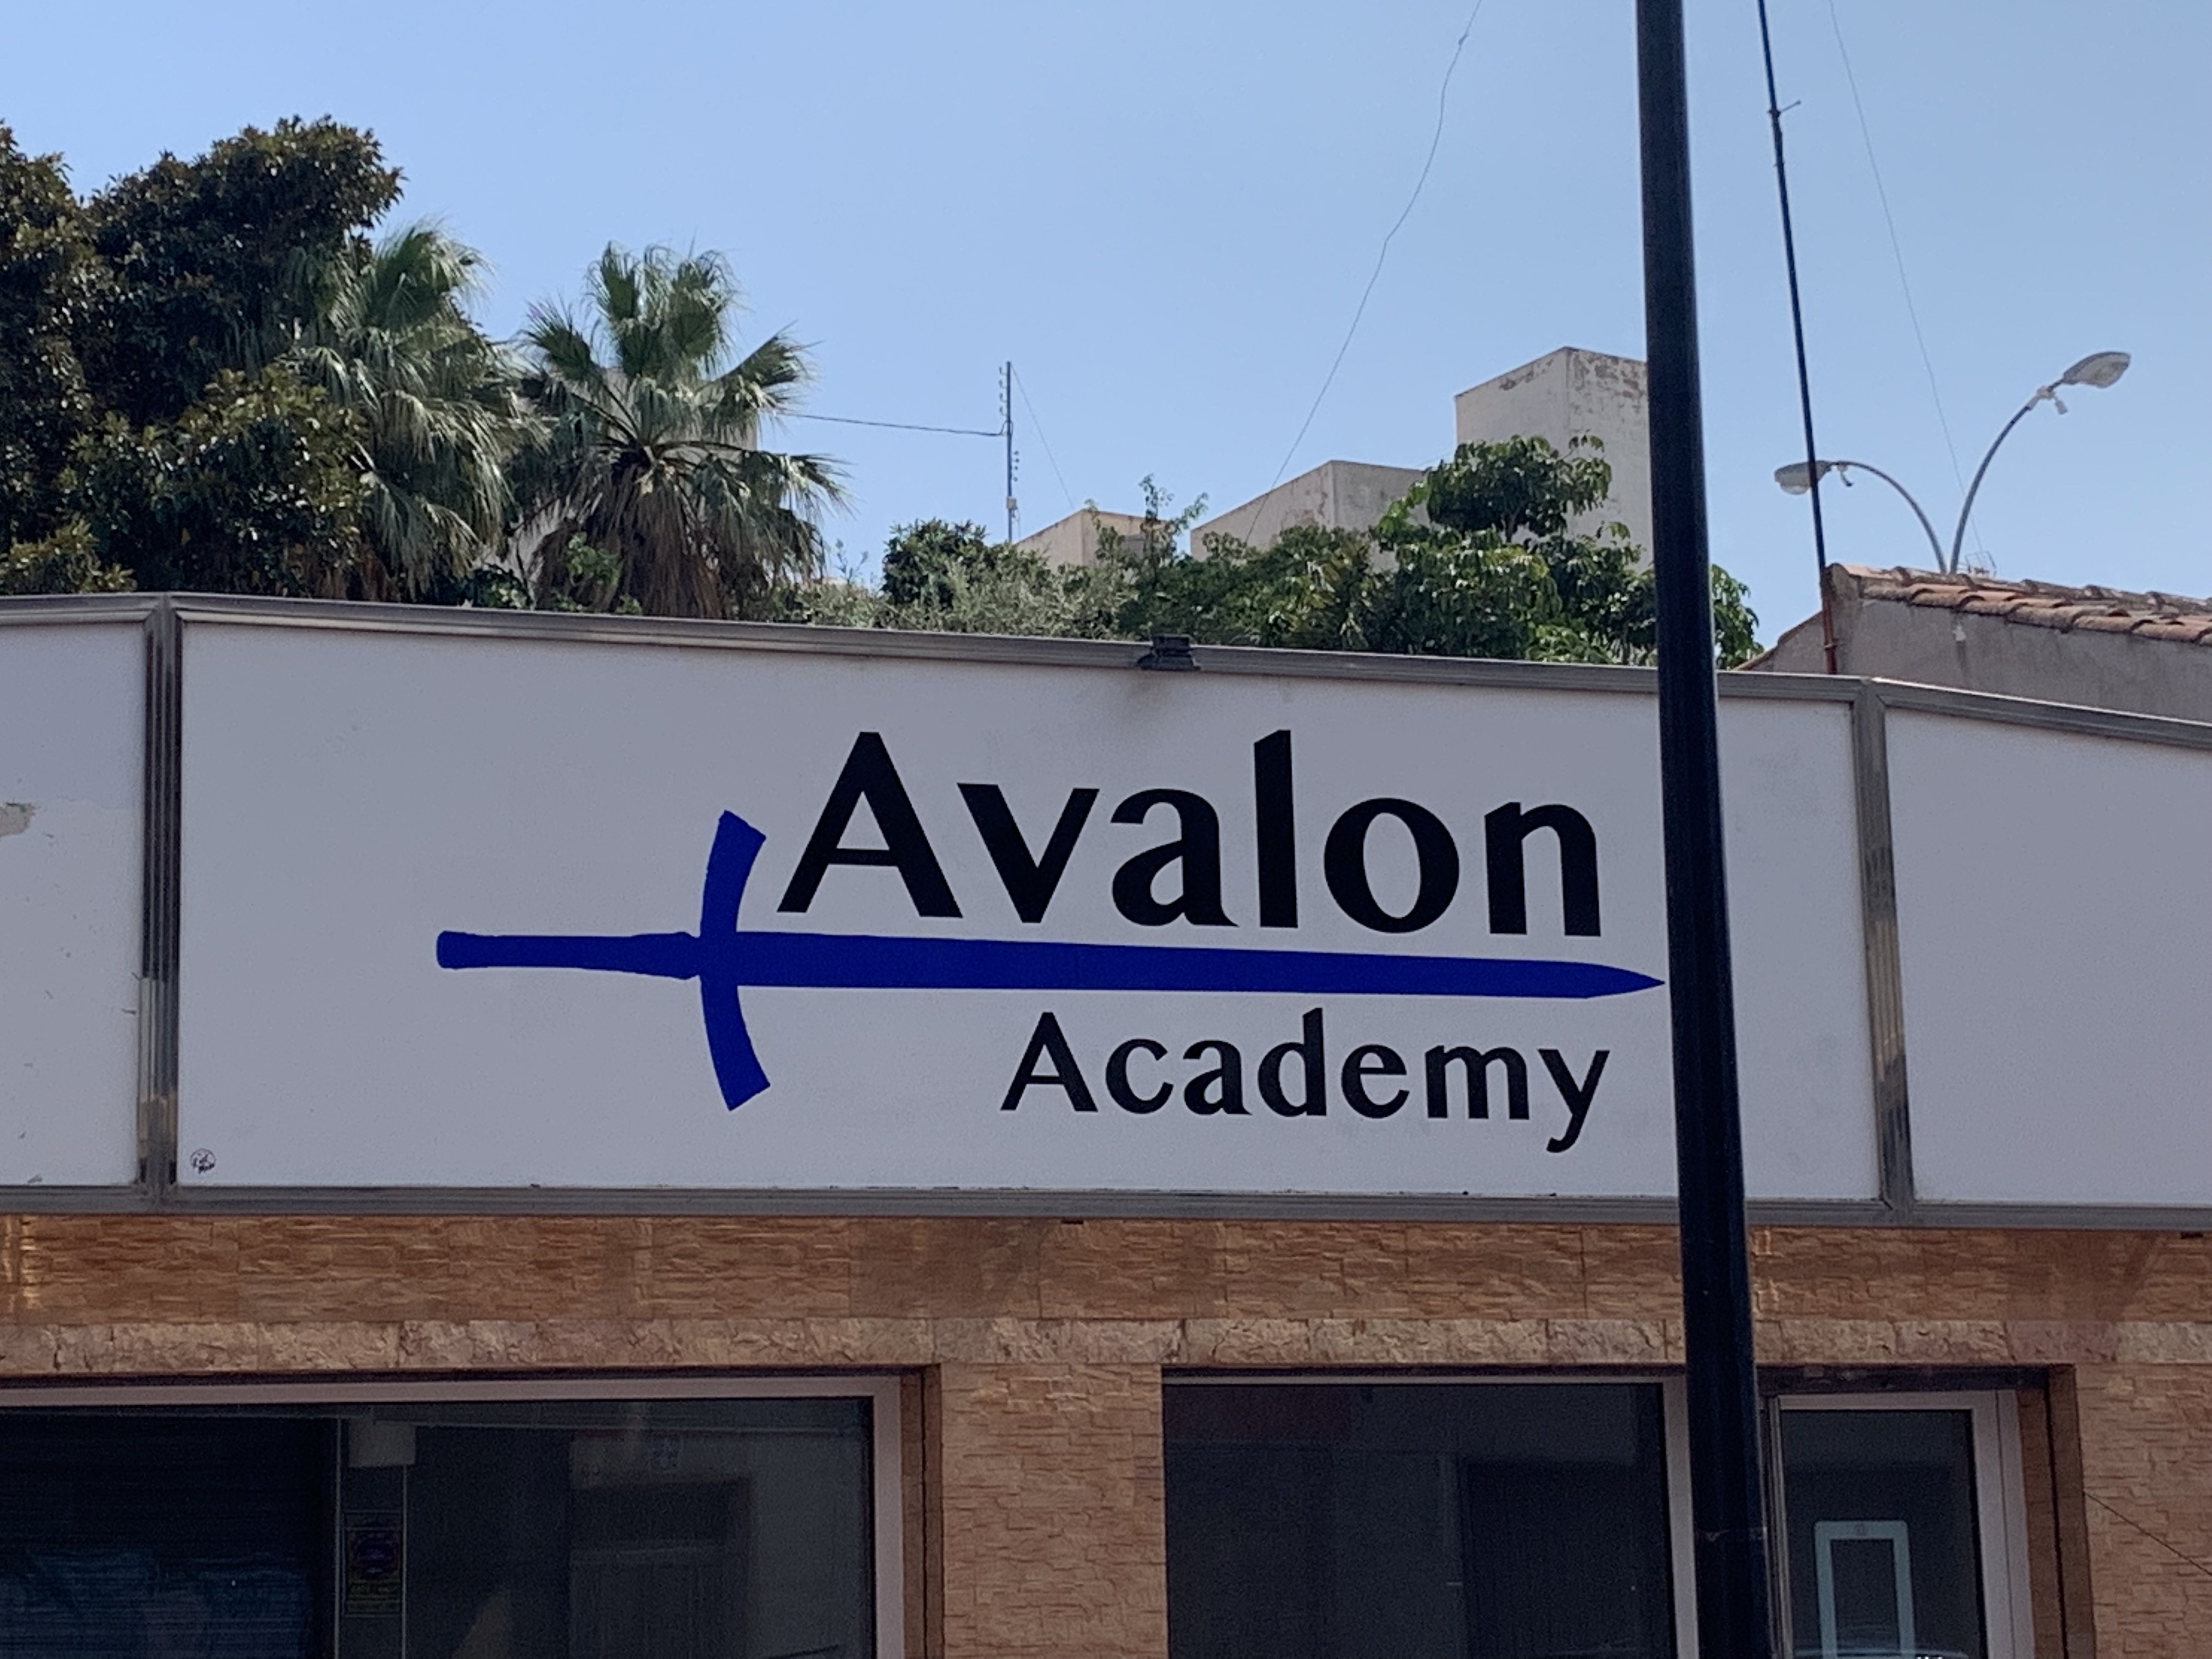 Avalon Academy. Clases de Inglés y Mecanografía